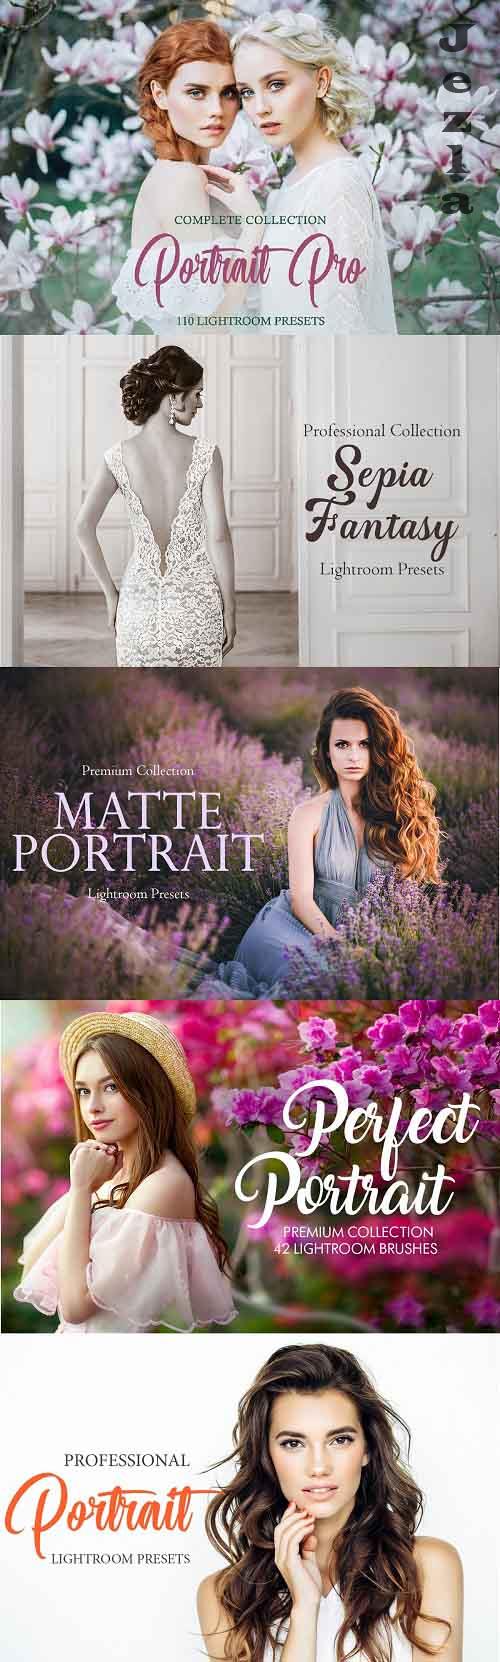 Portrait Pro Complete Collection - 4822070